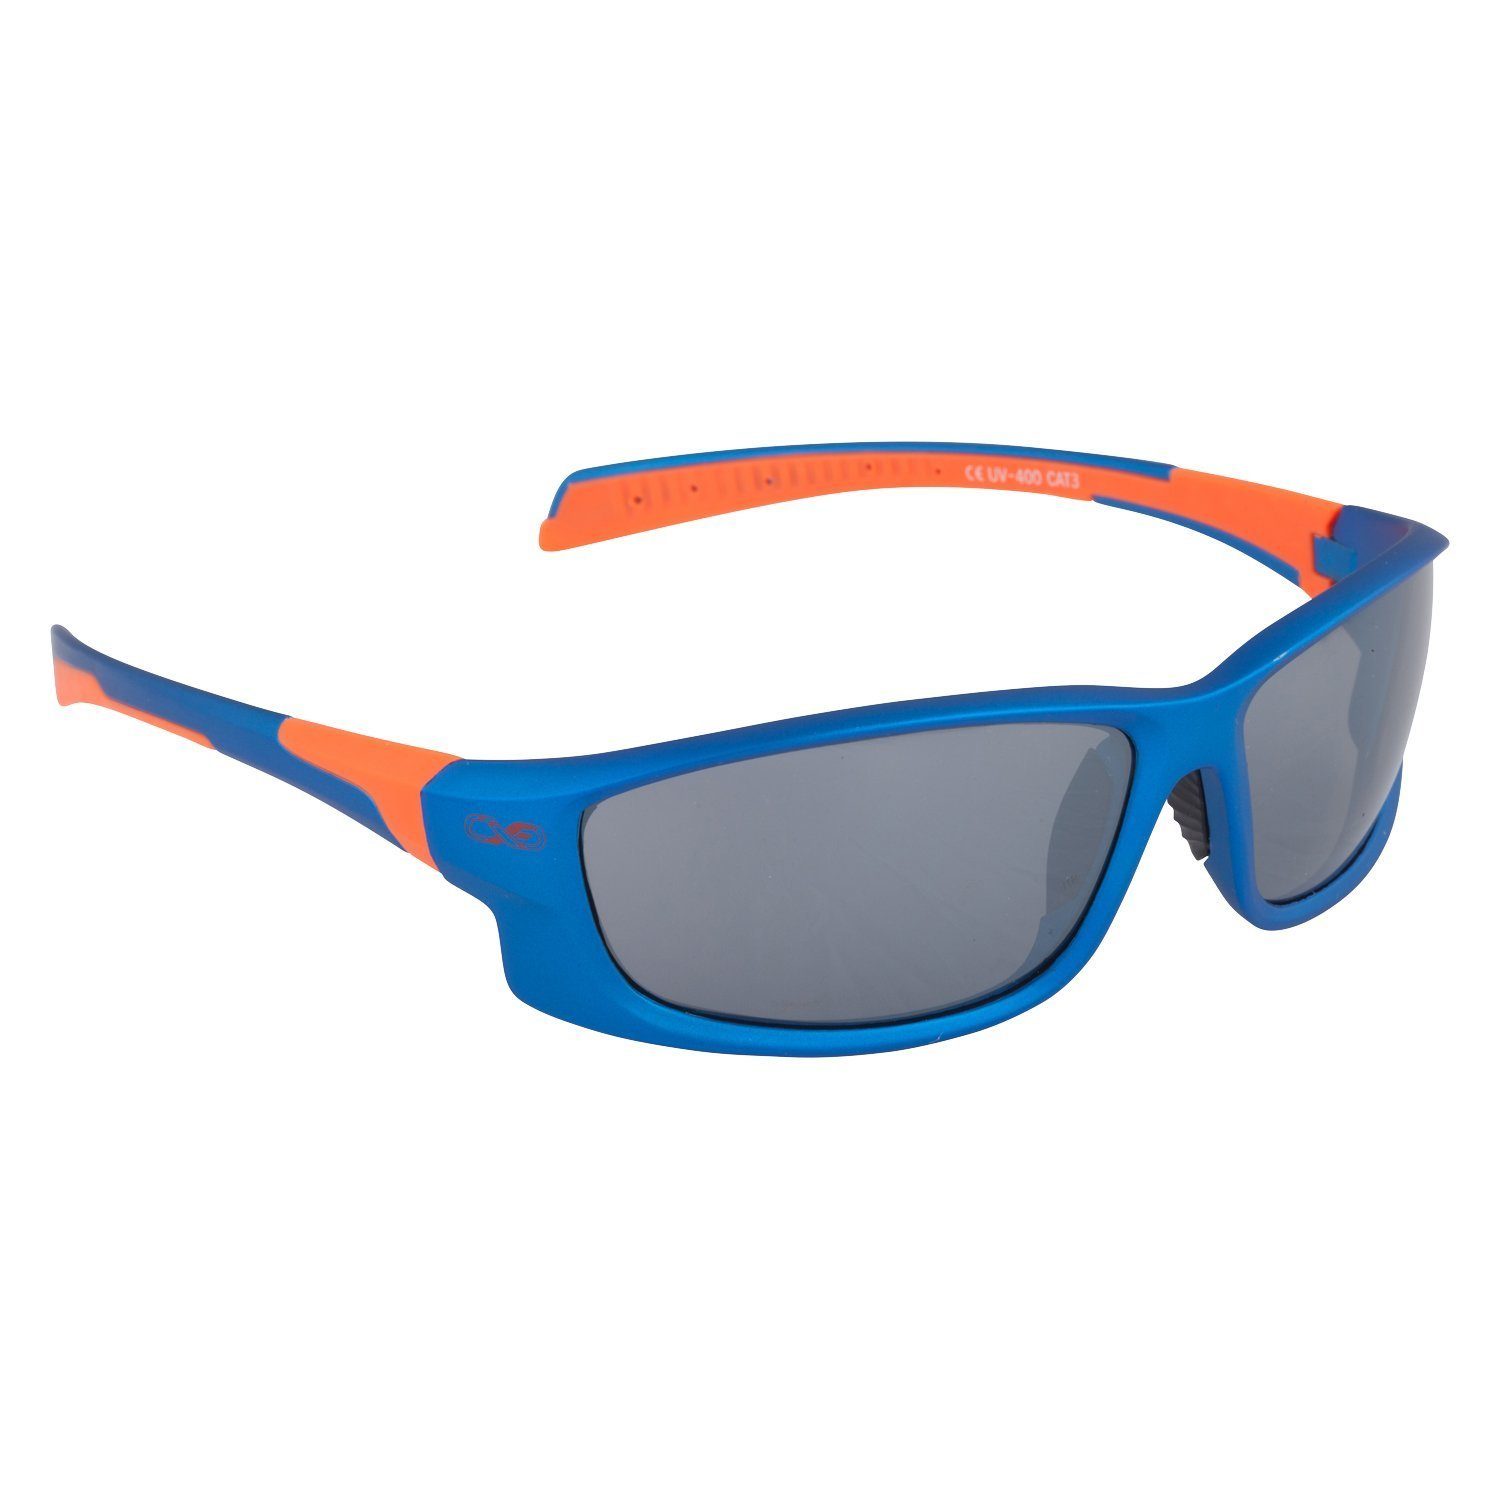 Viwanda Sonnenbrille Infinite Eins Sportbrille in 3 Farben (Mit Aufbewahrungsbeutel / Reinigungstuch)